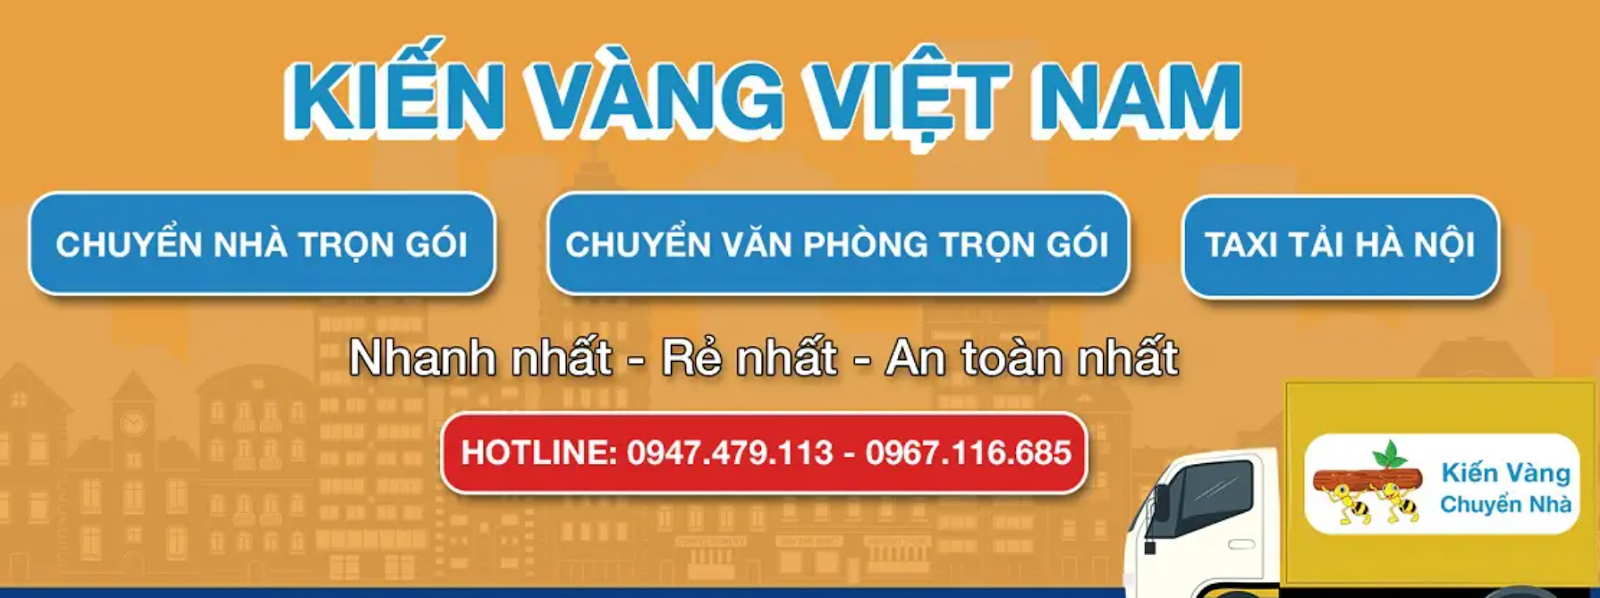 Giới thiệu công ty chuyển nhà Kiến Vàng Việt Nam